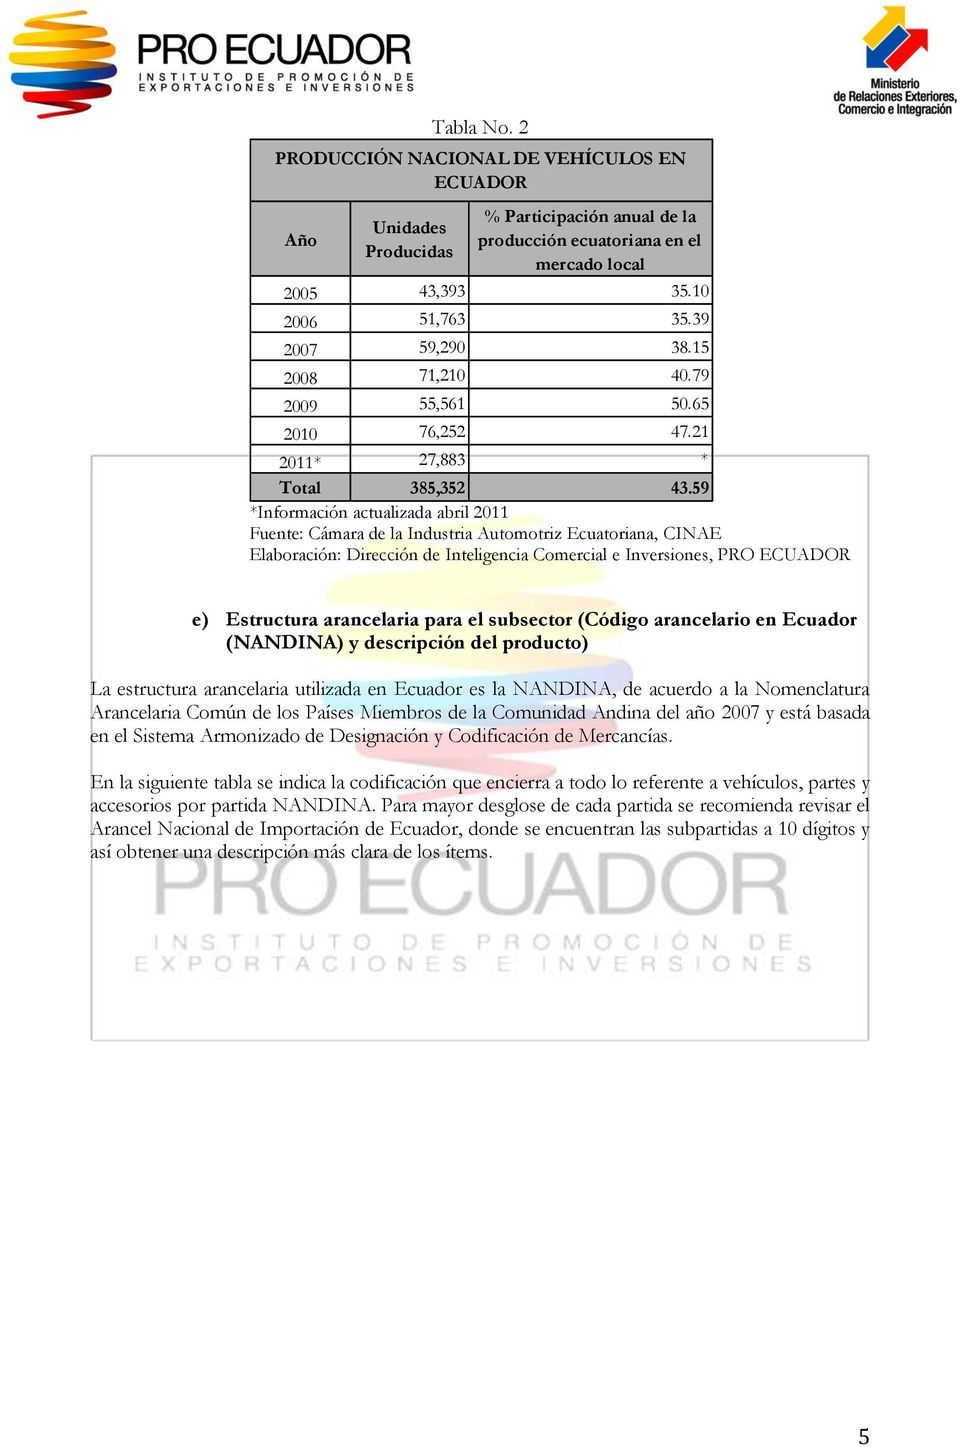 59 *Información actualizada abril 2011 Fuente: Cámara de la Industria Automotriz Ecuatoriana, CINAE e) Estructura arancelaria para el subsector (Código arancelario en Ecuador (NANDINA) y descripción